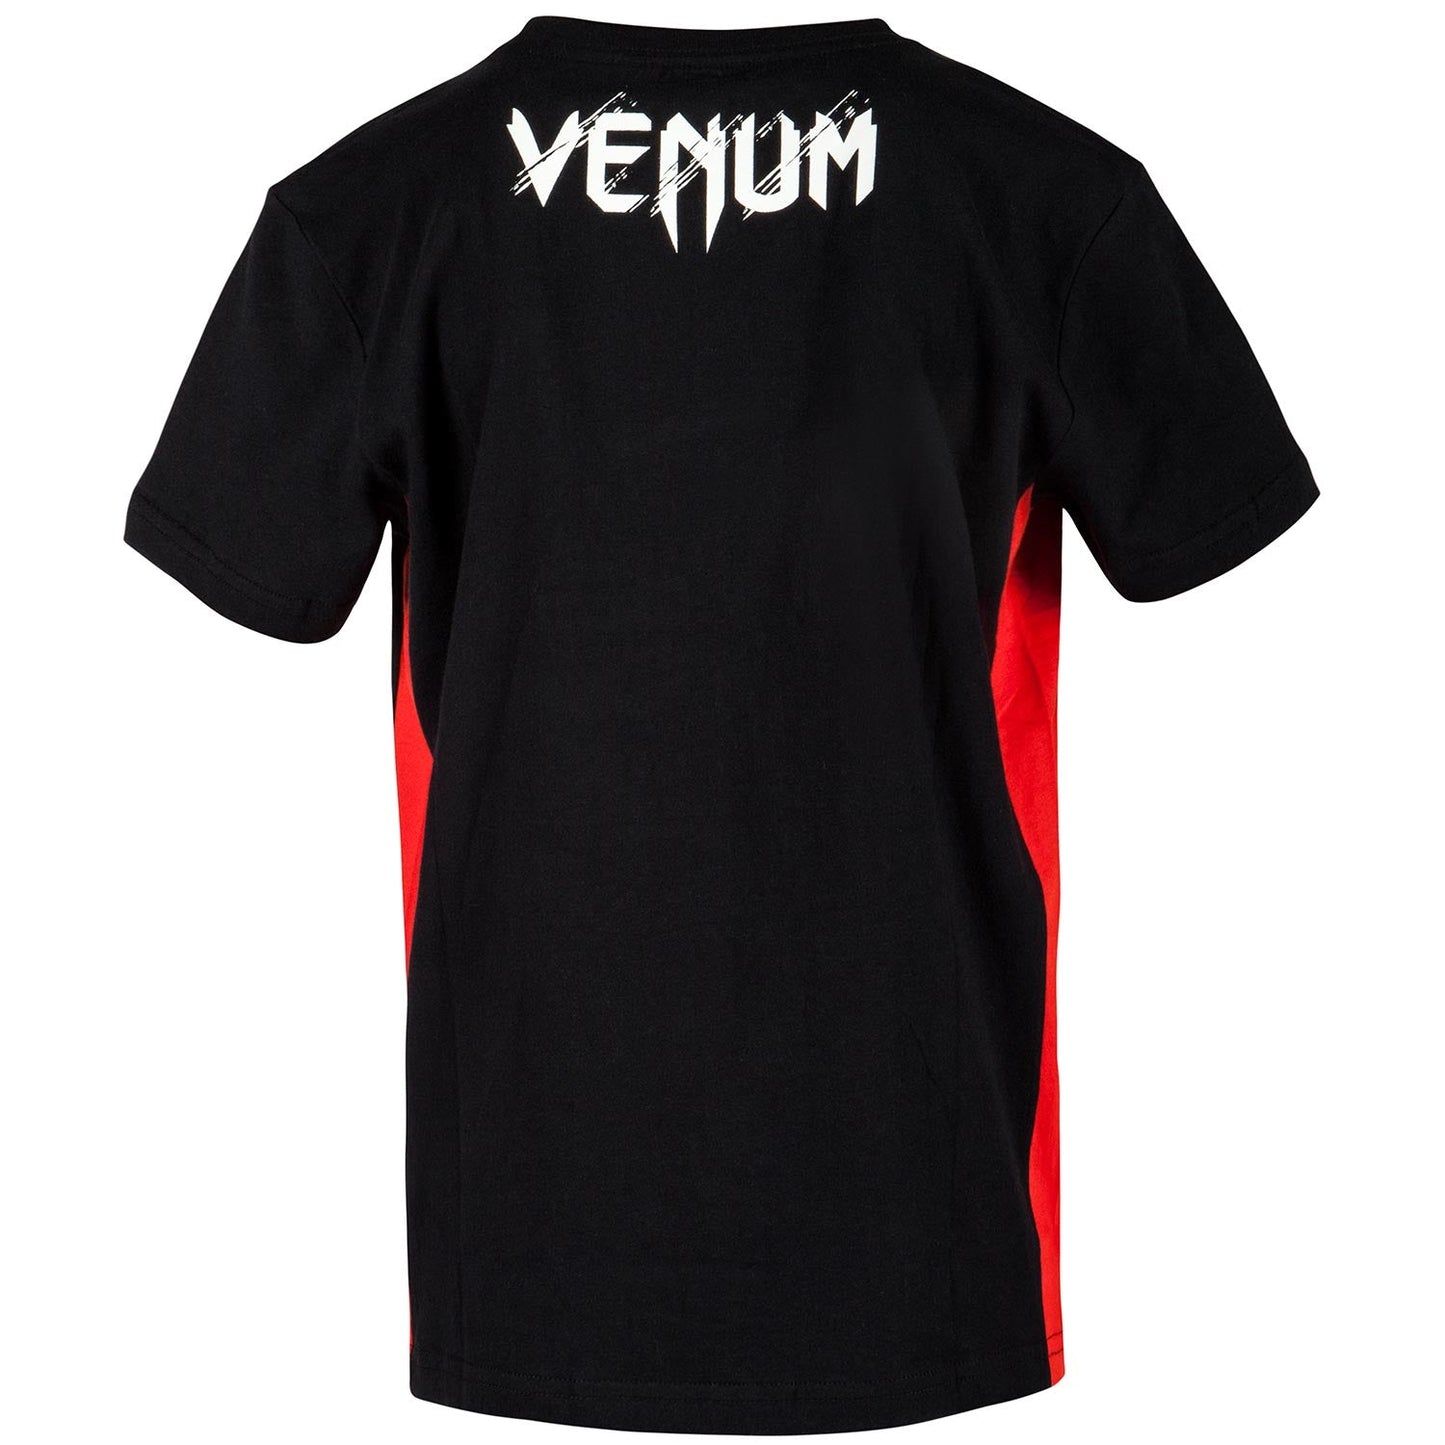 Maglietta Venum Contender per bambini - Nero/Rosso